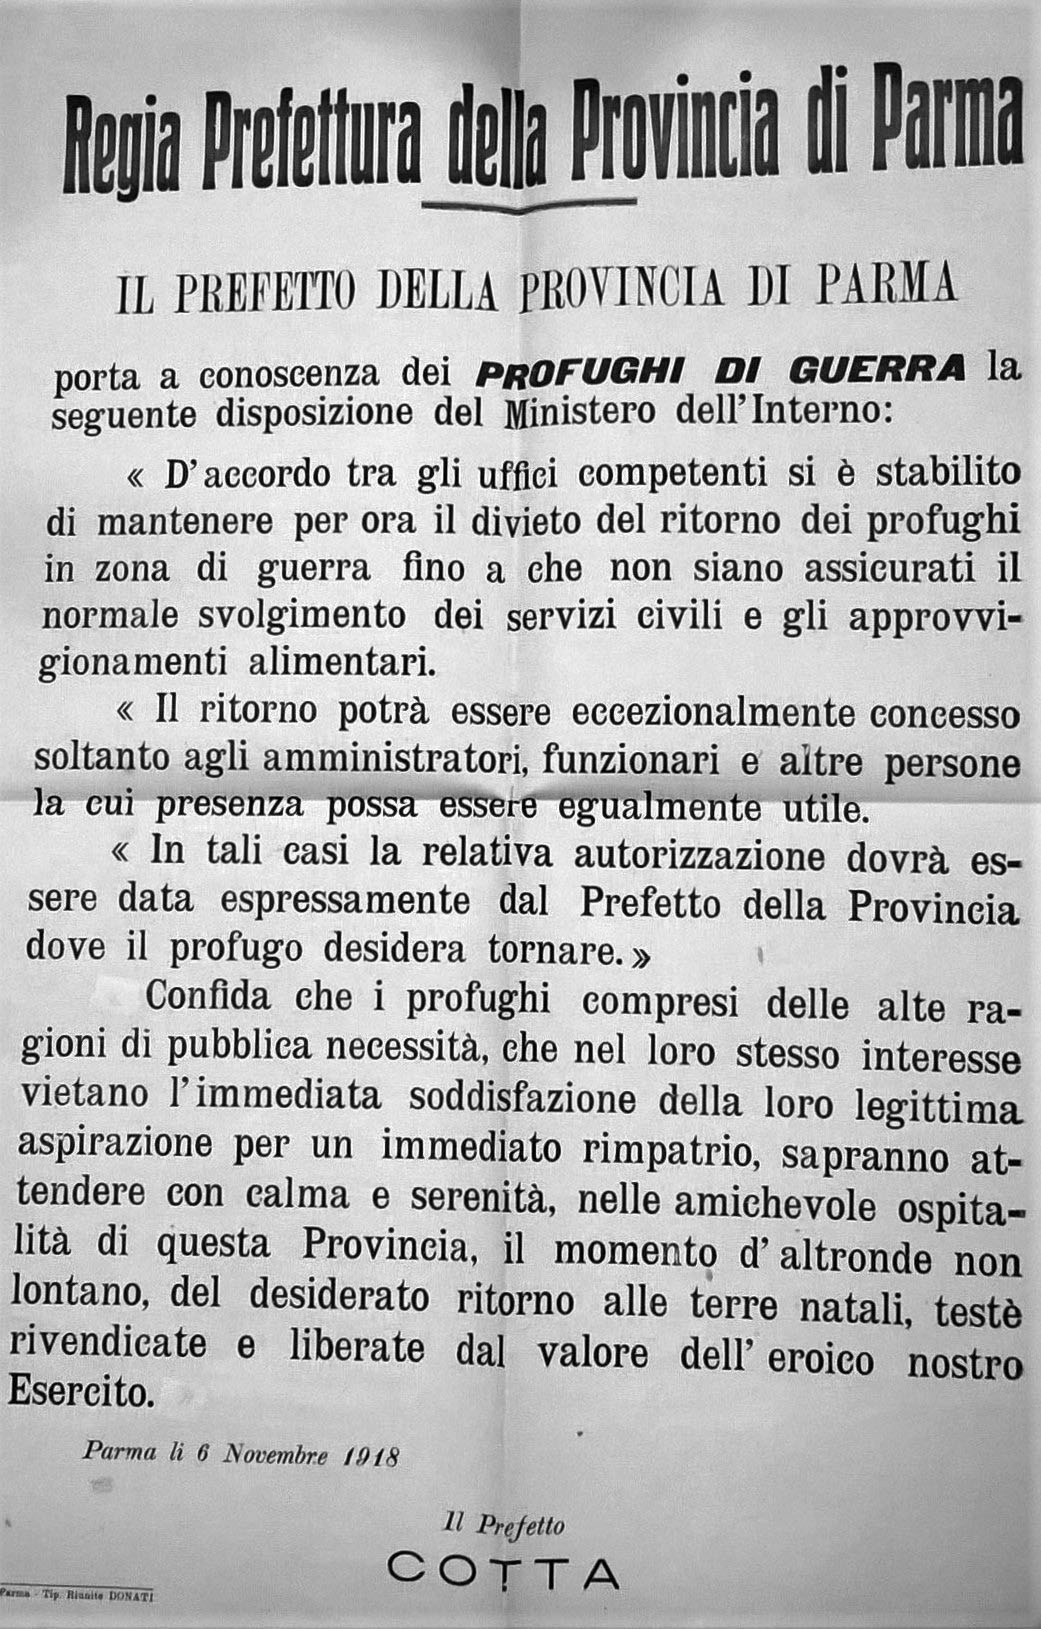 Manifesto affisso a Parma il 6 novembre 1918 (Archivio storico comunale di Parma)